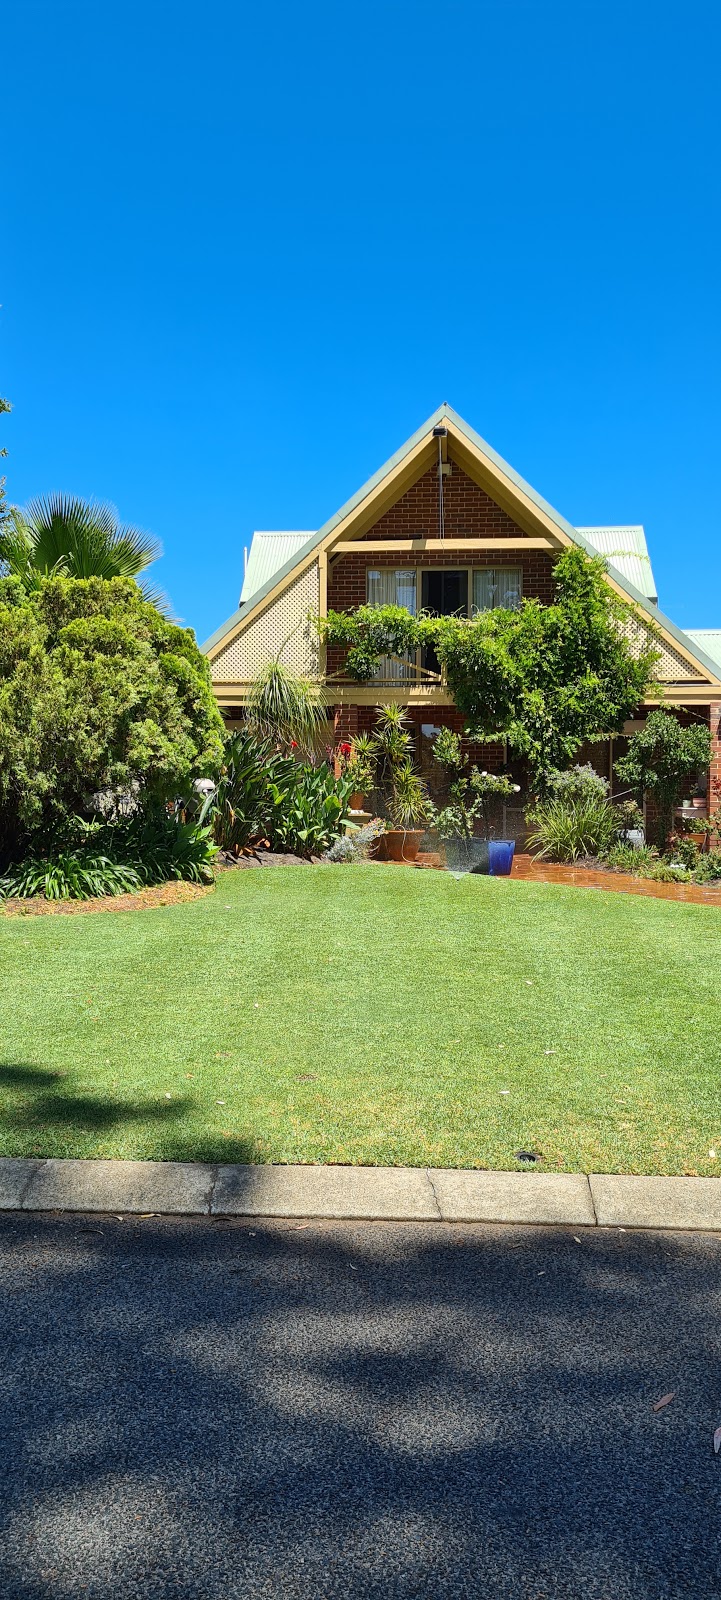 Foxys Lawn and Garden Care | Cuttlefish St, Yanchep WA 6035, Australia | Phone: 0409 086 642